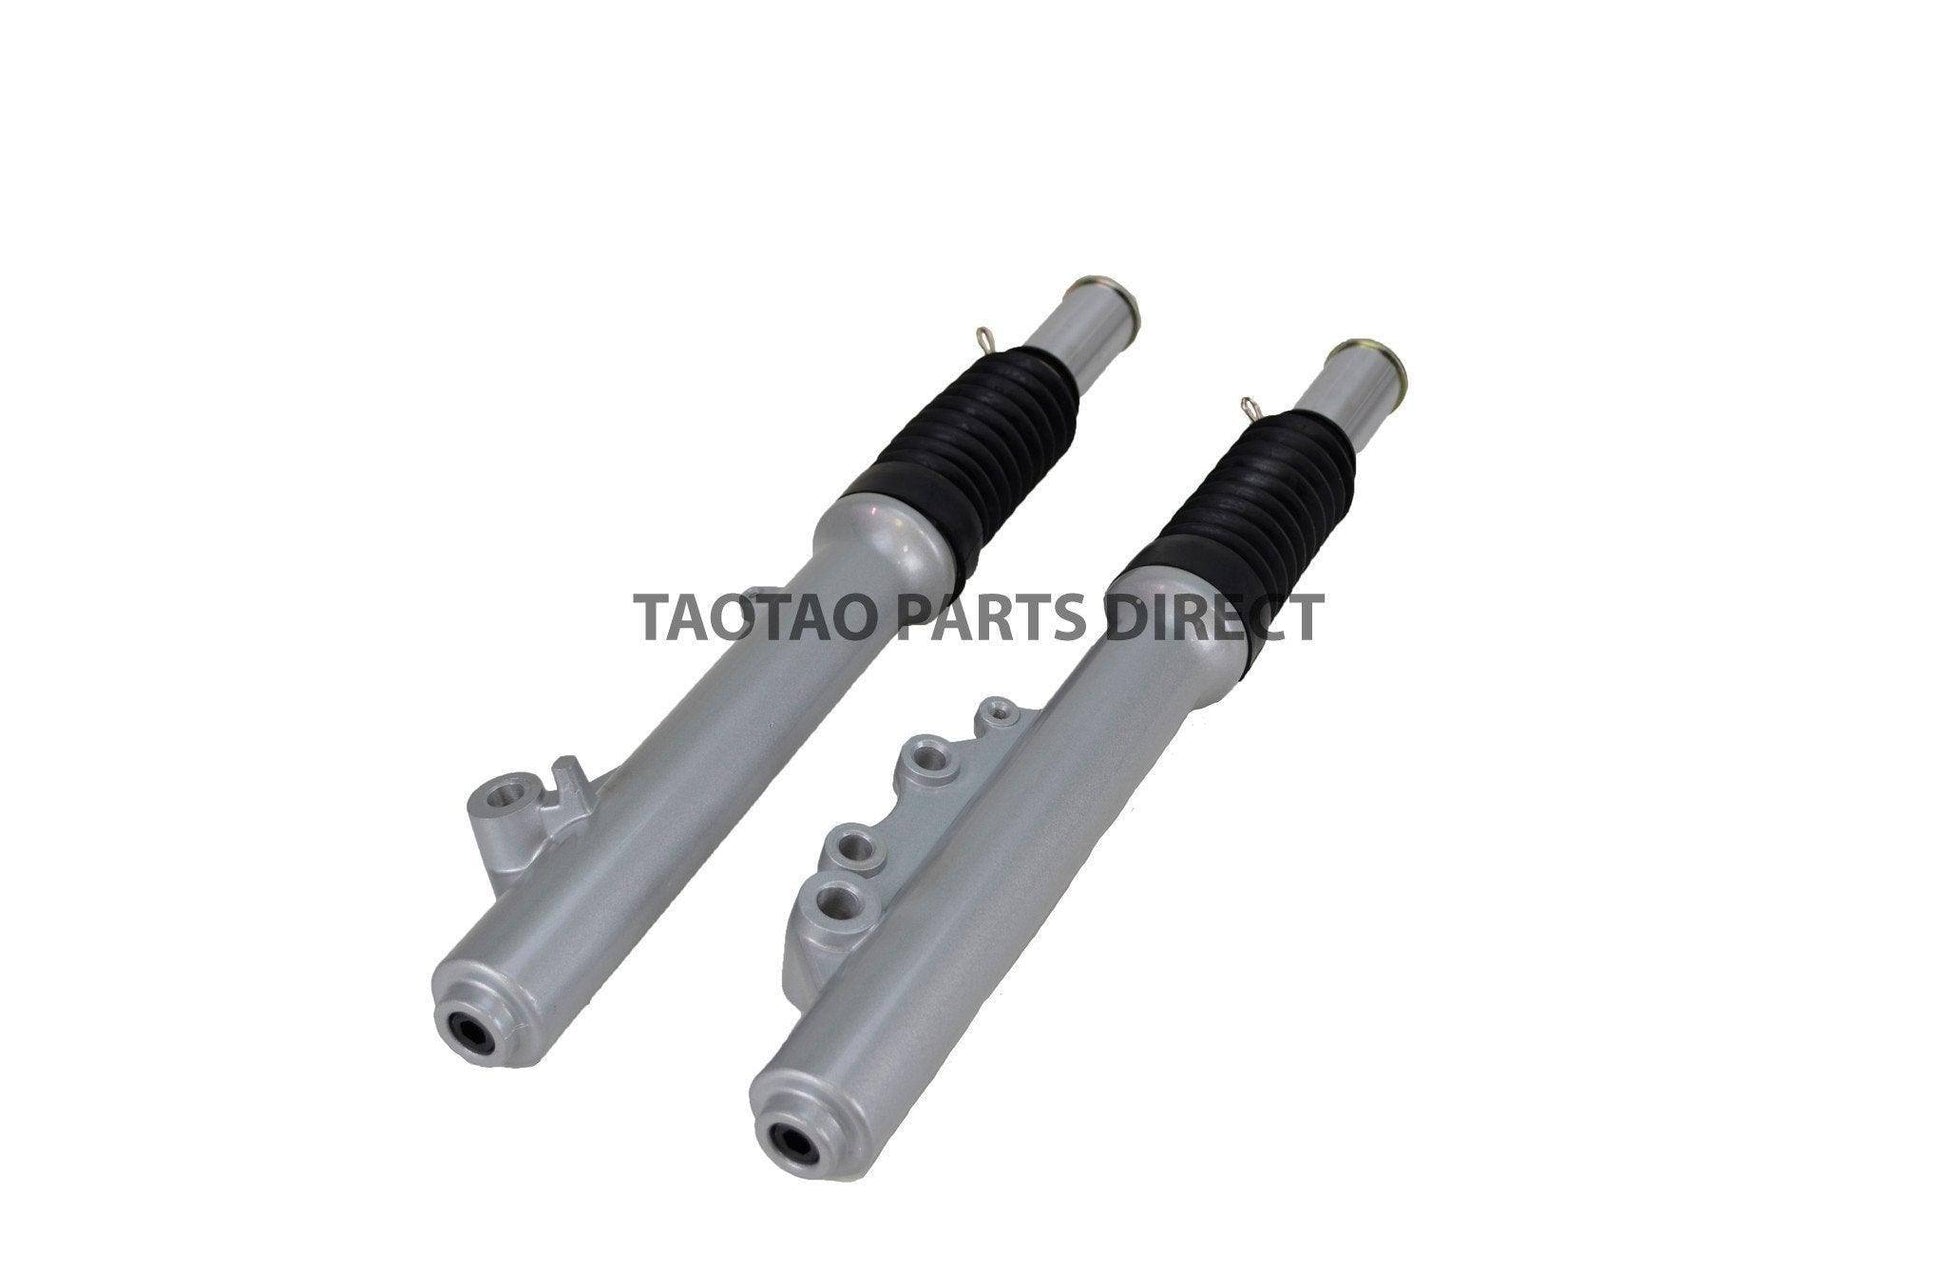 Lancer 150 Front Fork Set - TaoTao Parts Direct